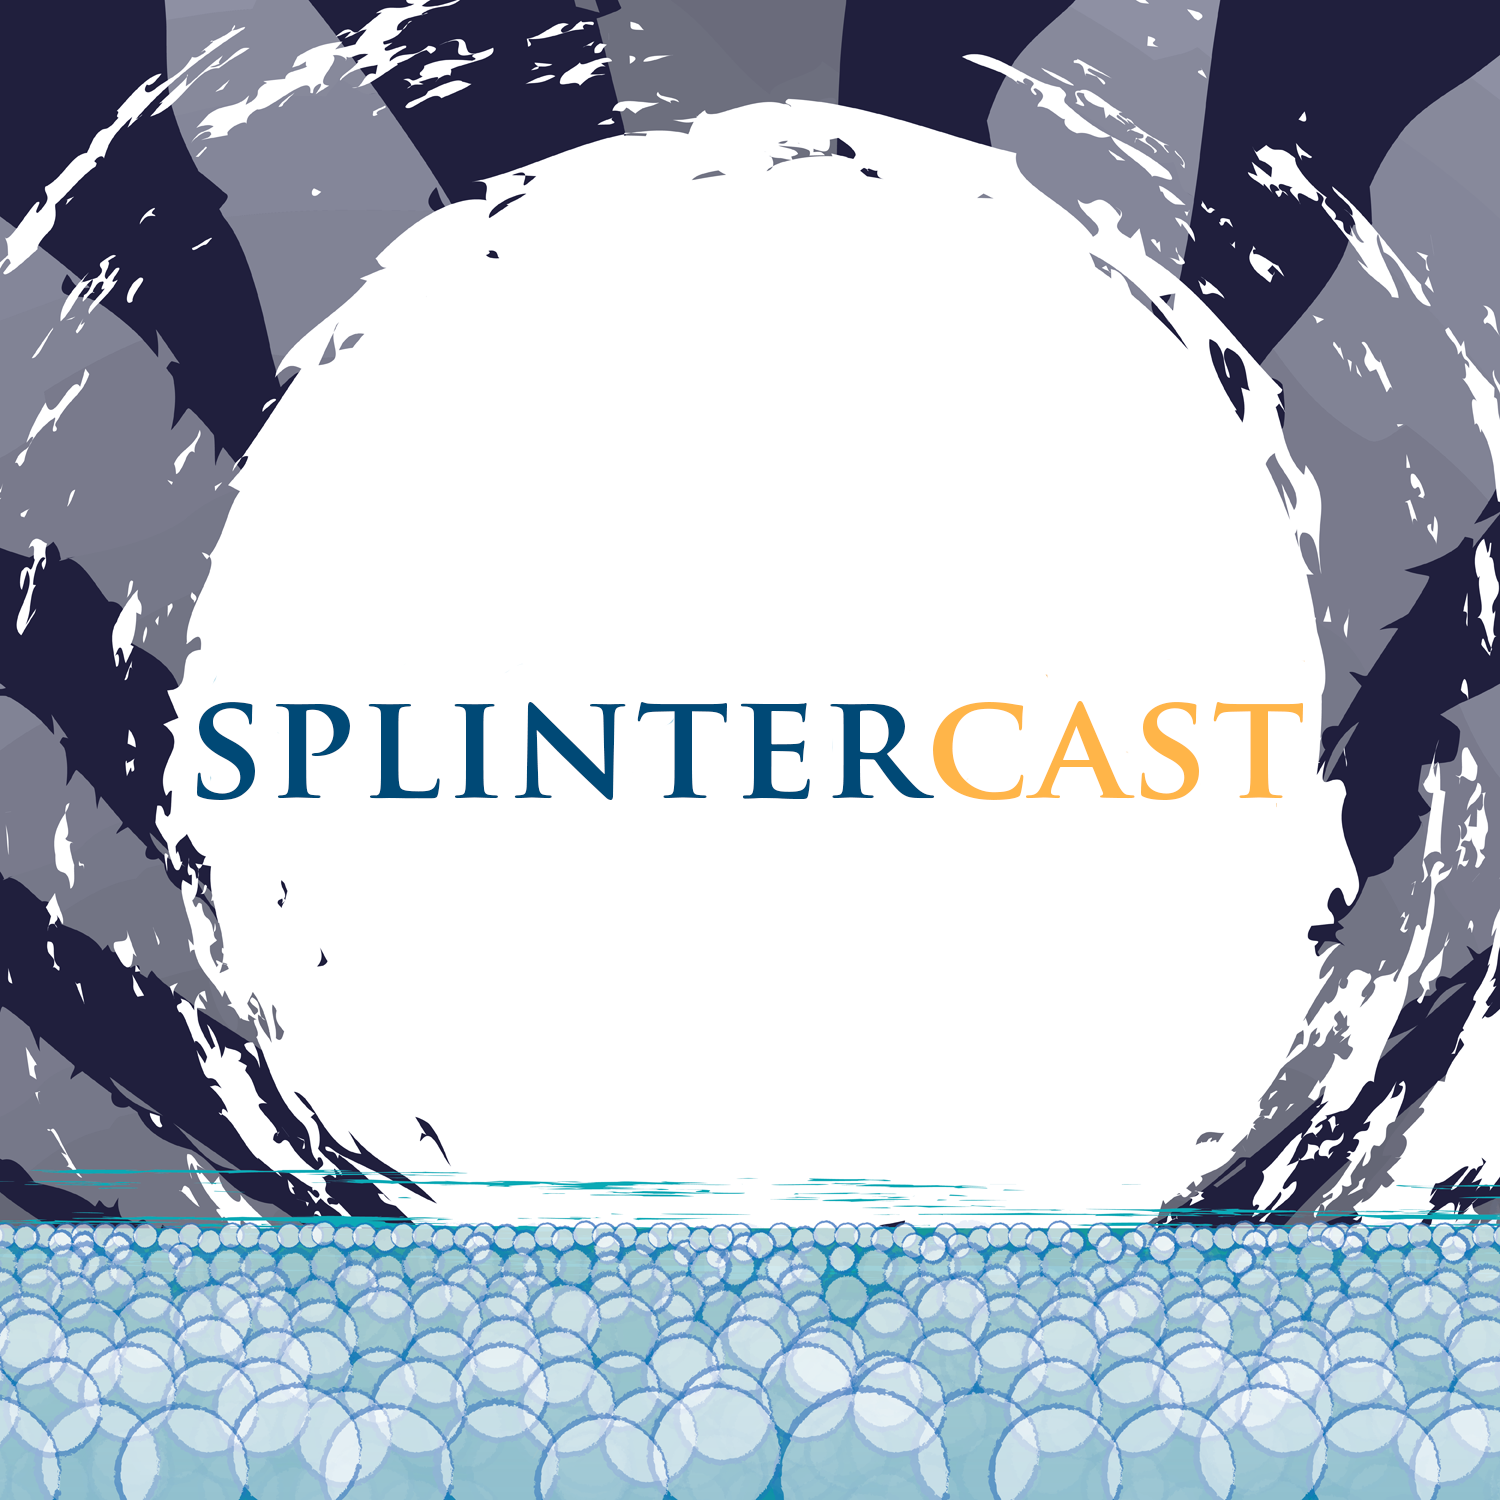 More information about "Splintercast: Cradle"